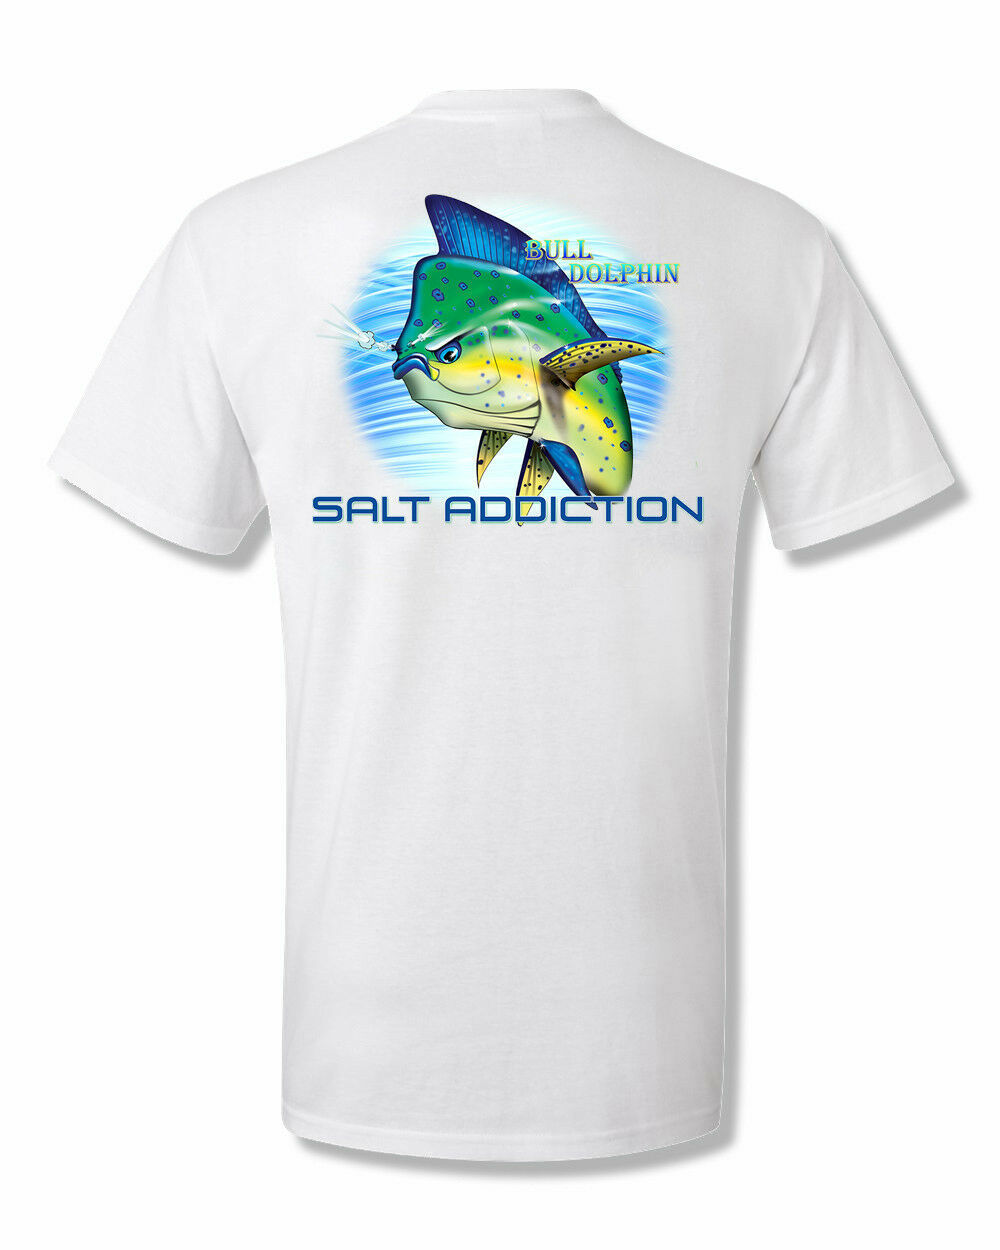 Salt Addiction Fishing t shirt,Saltwater shirt,Bull Dolphin,mahi,reel,life,rod